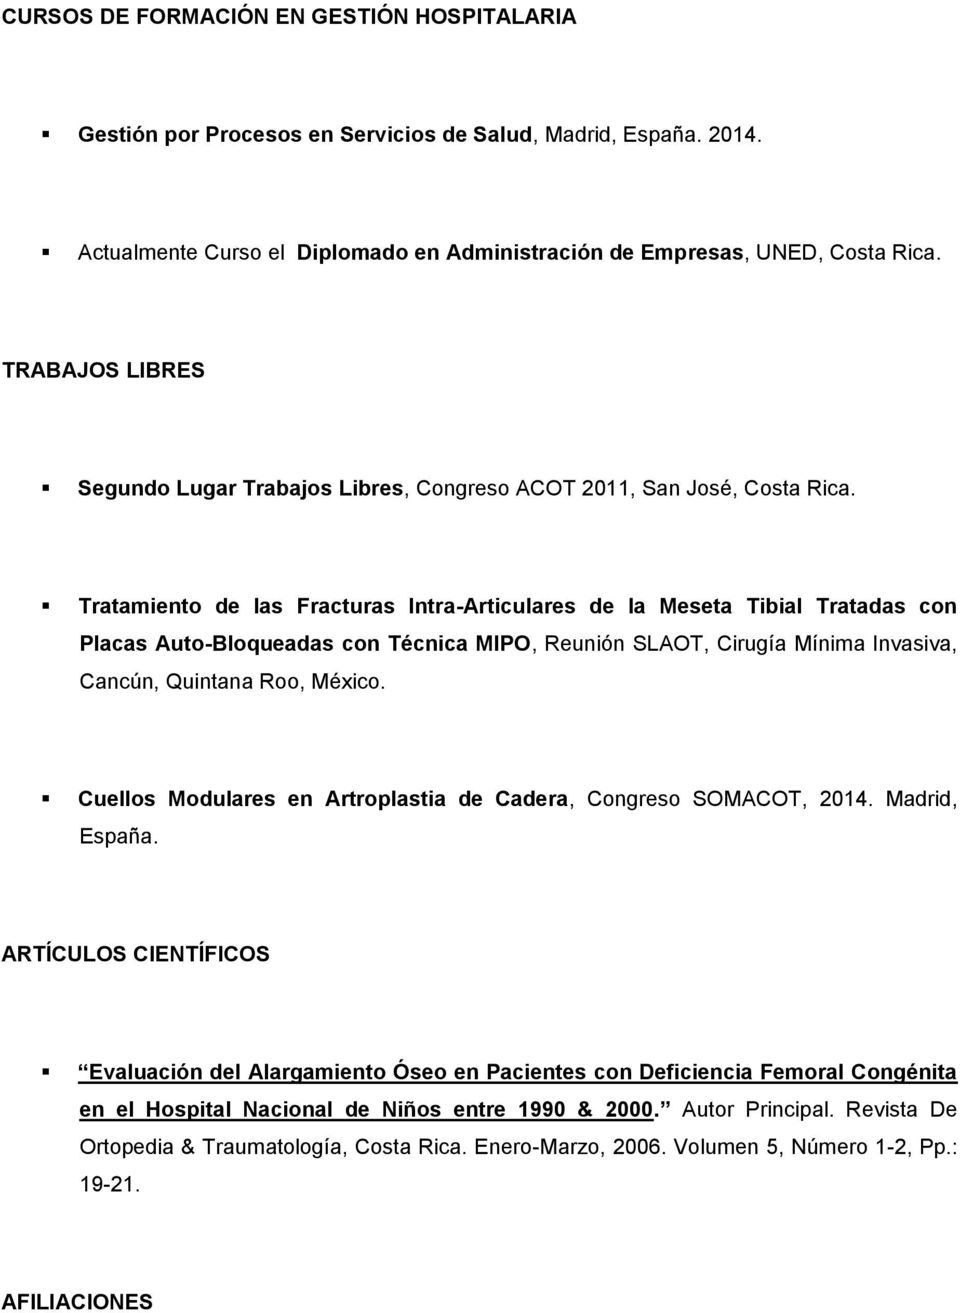 Tratamiento de las Fracturas Intra-Articulares de la Meseta Tibial Tratadas con Placas Auto-Bloqueadas con Técnica MIPO, Reunión SLAOT, Cirugía Mínima Invasiva, Cancún, Quintana Roo, México.